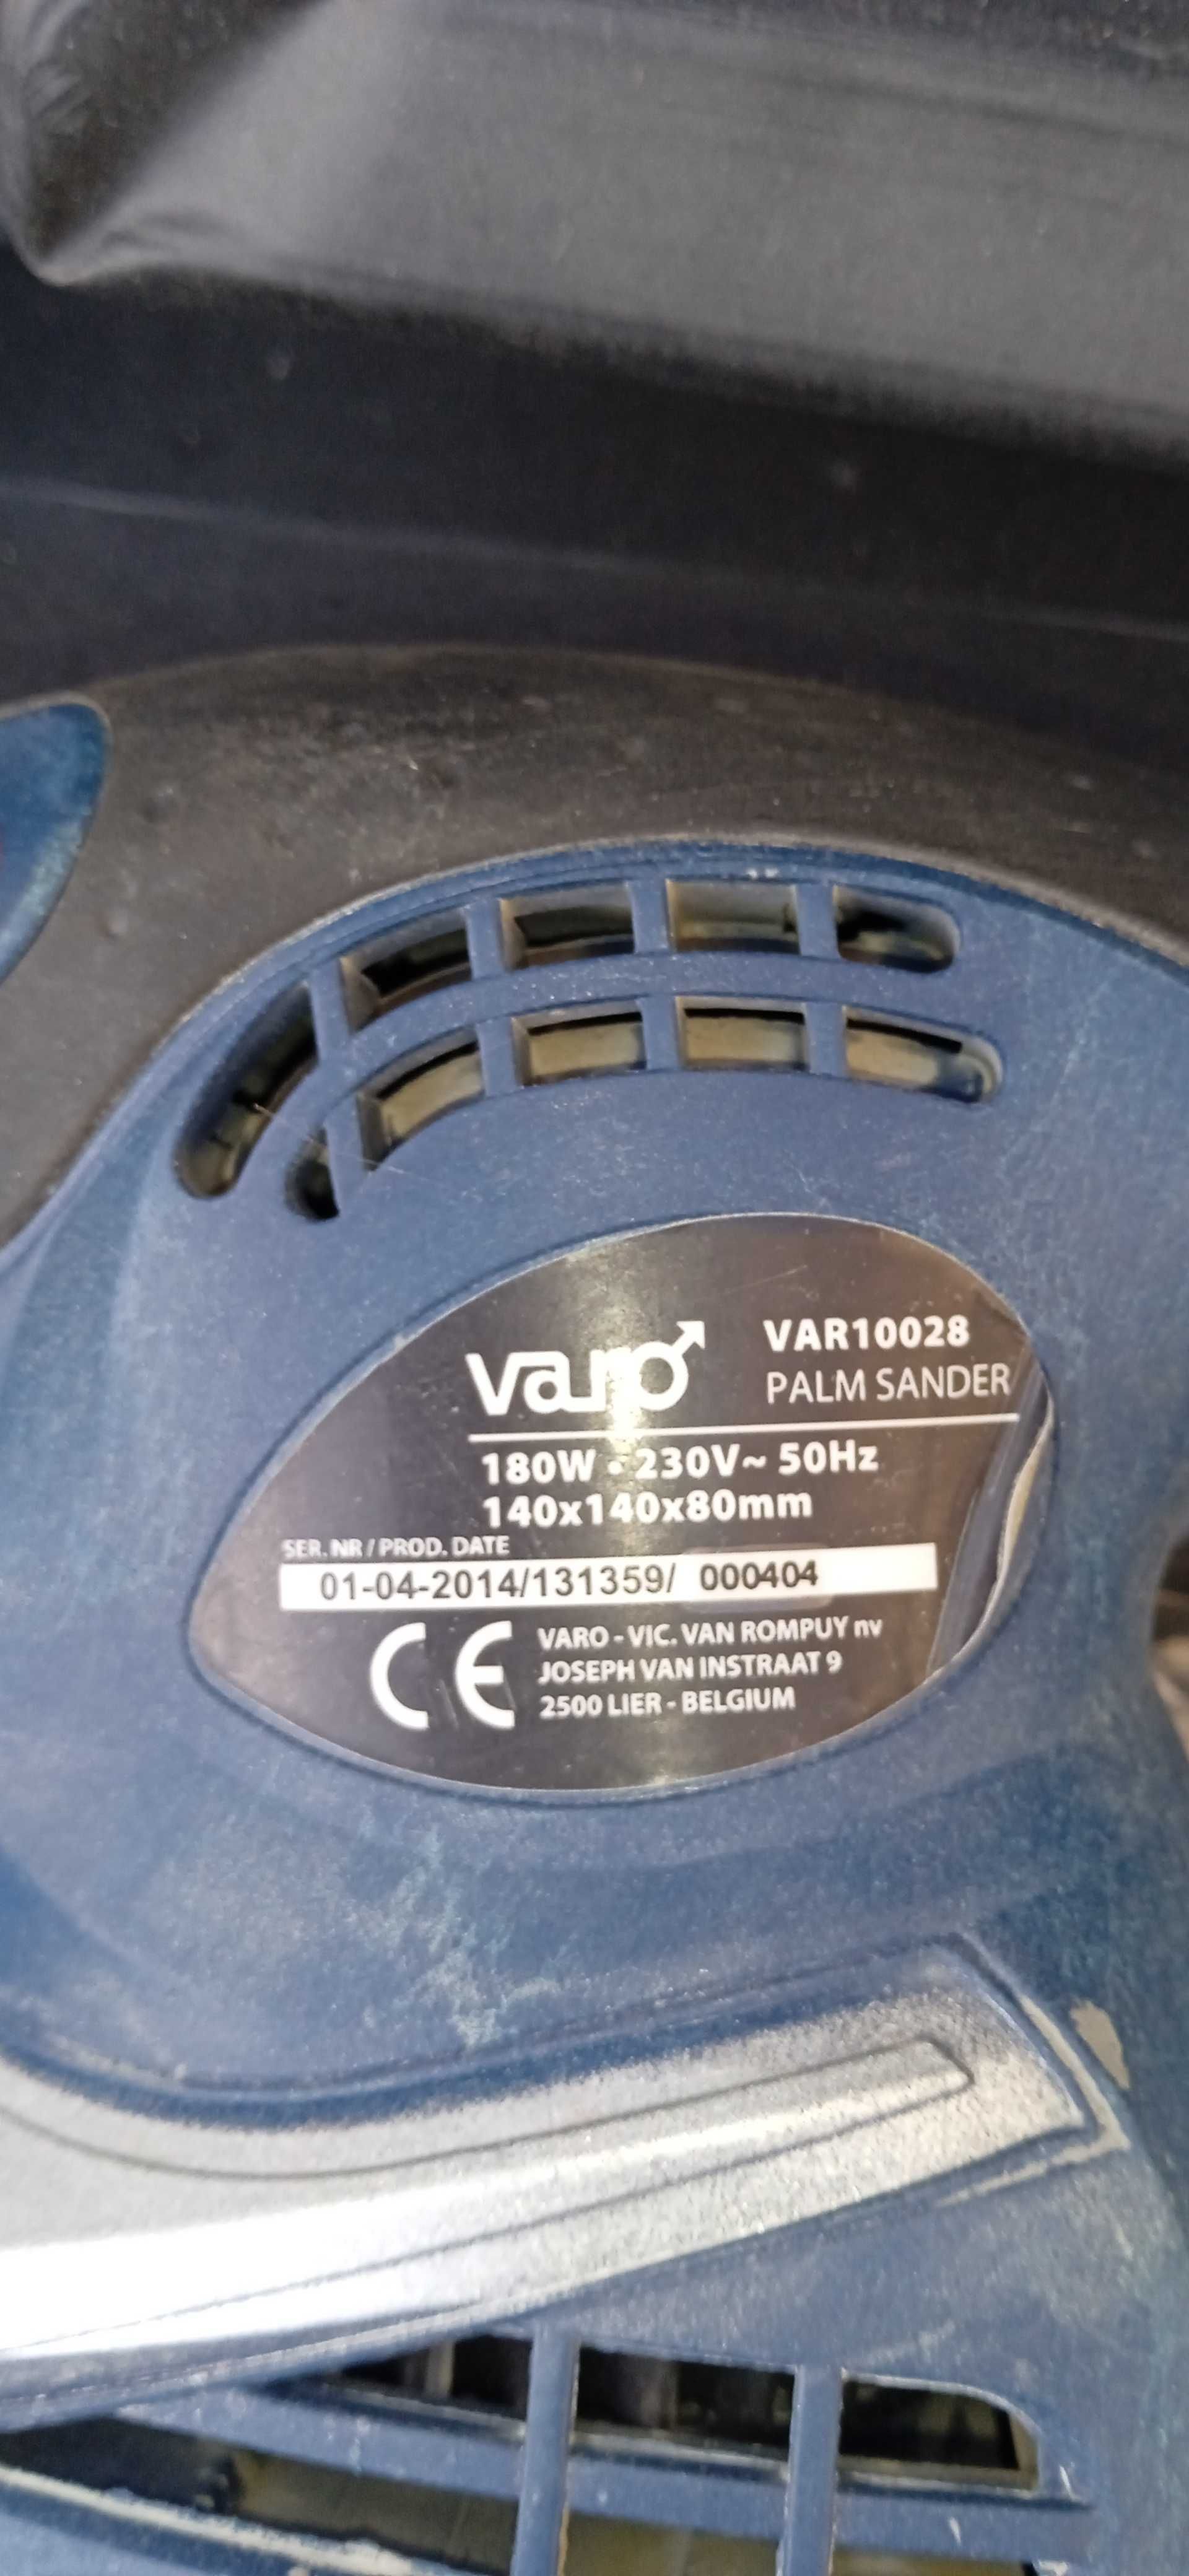 Вибро шлифовальная машина VARO VAR10028